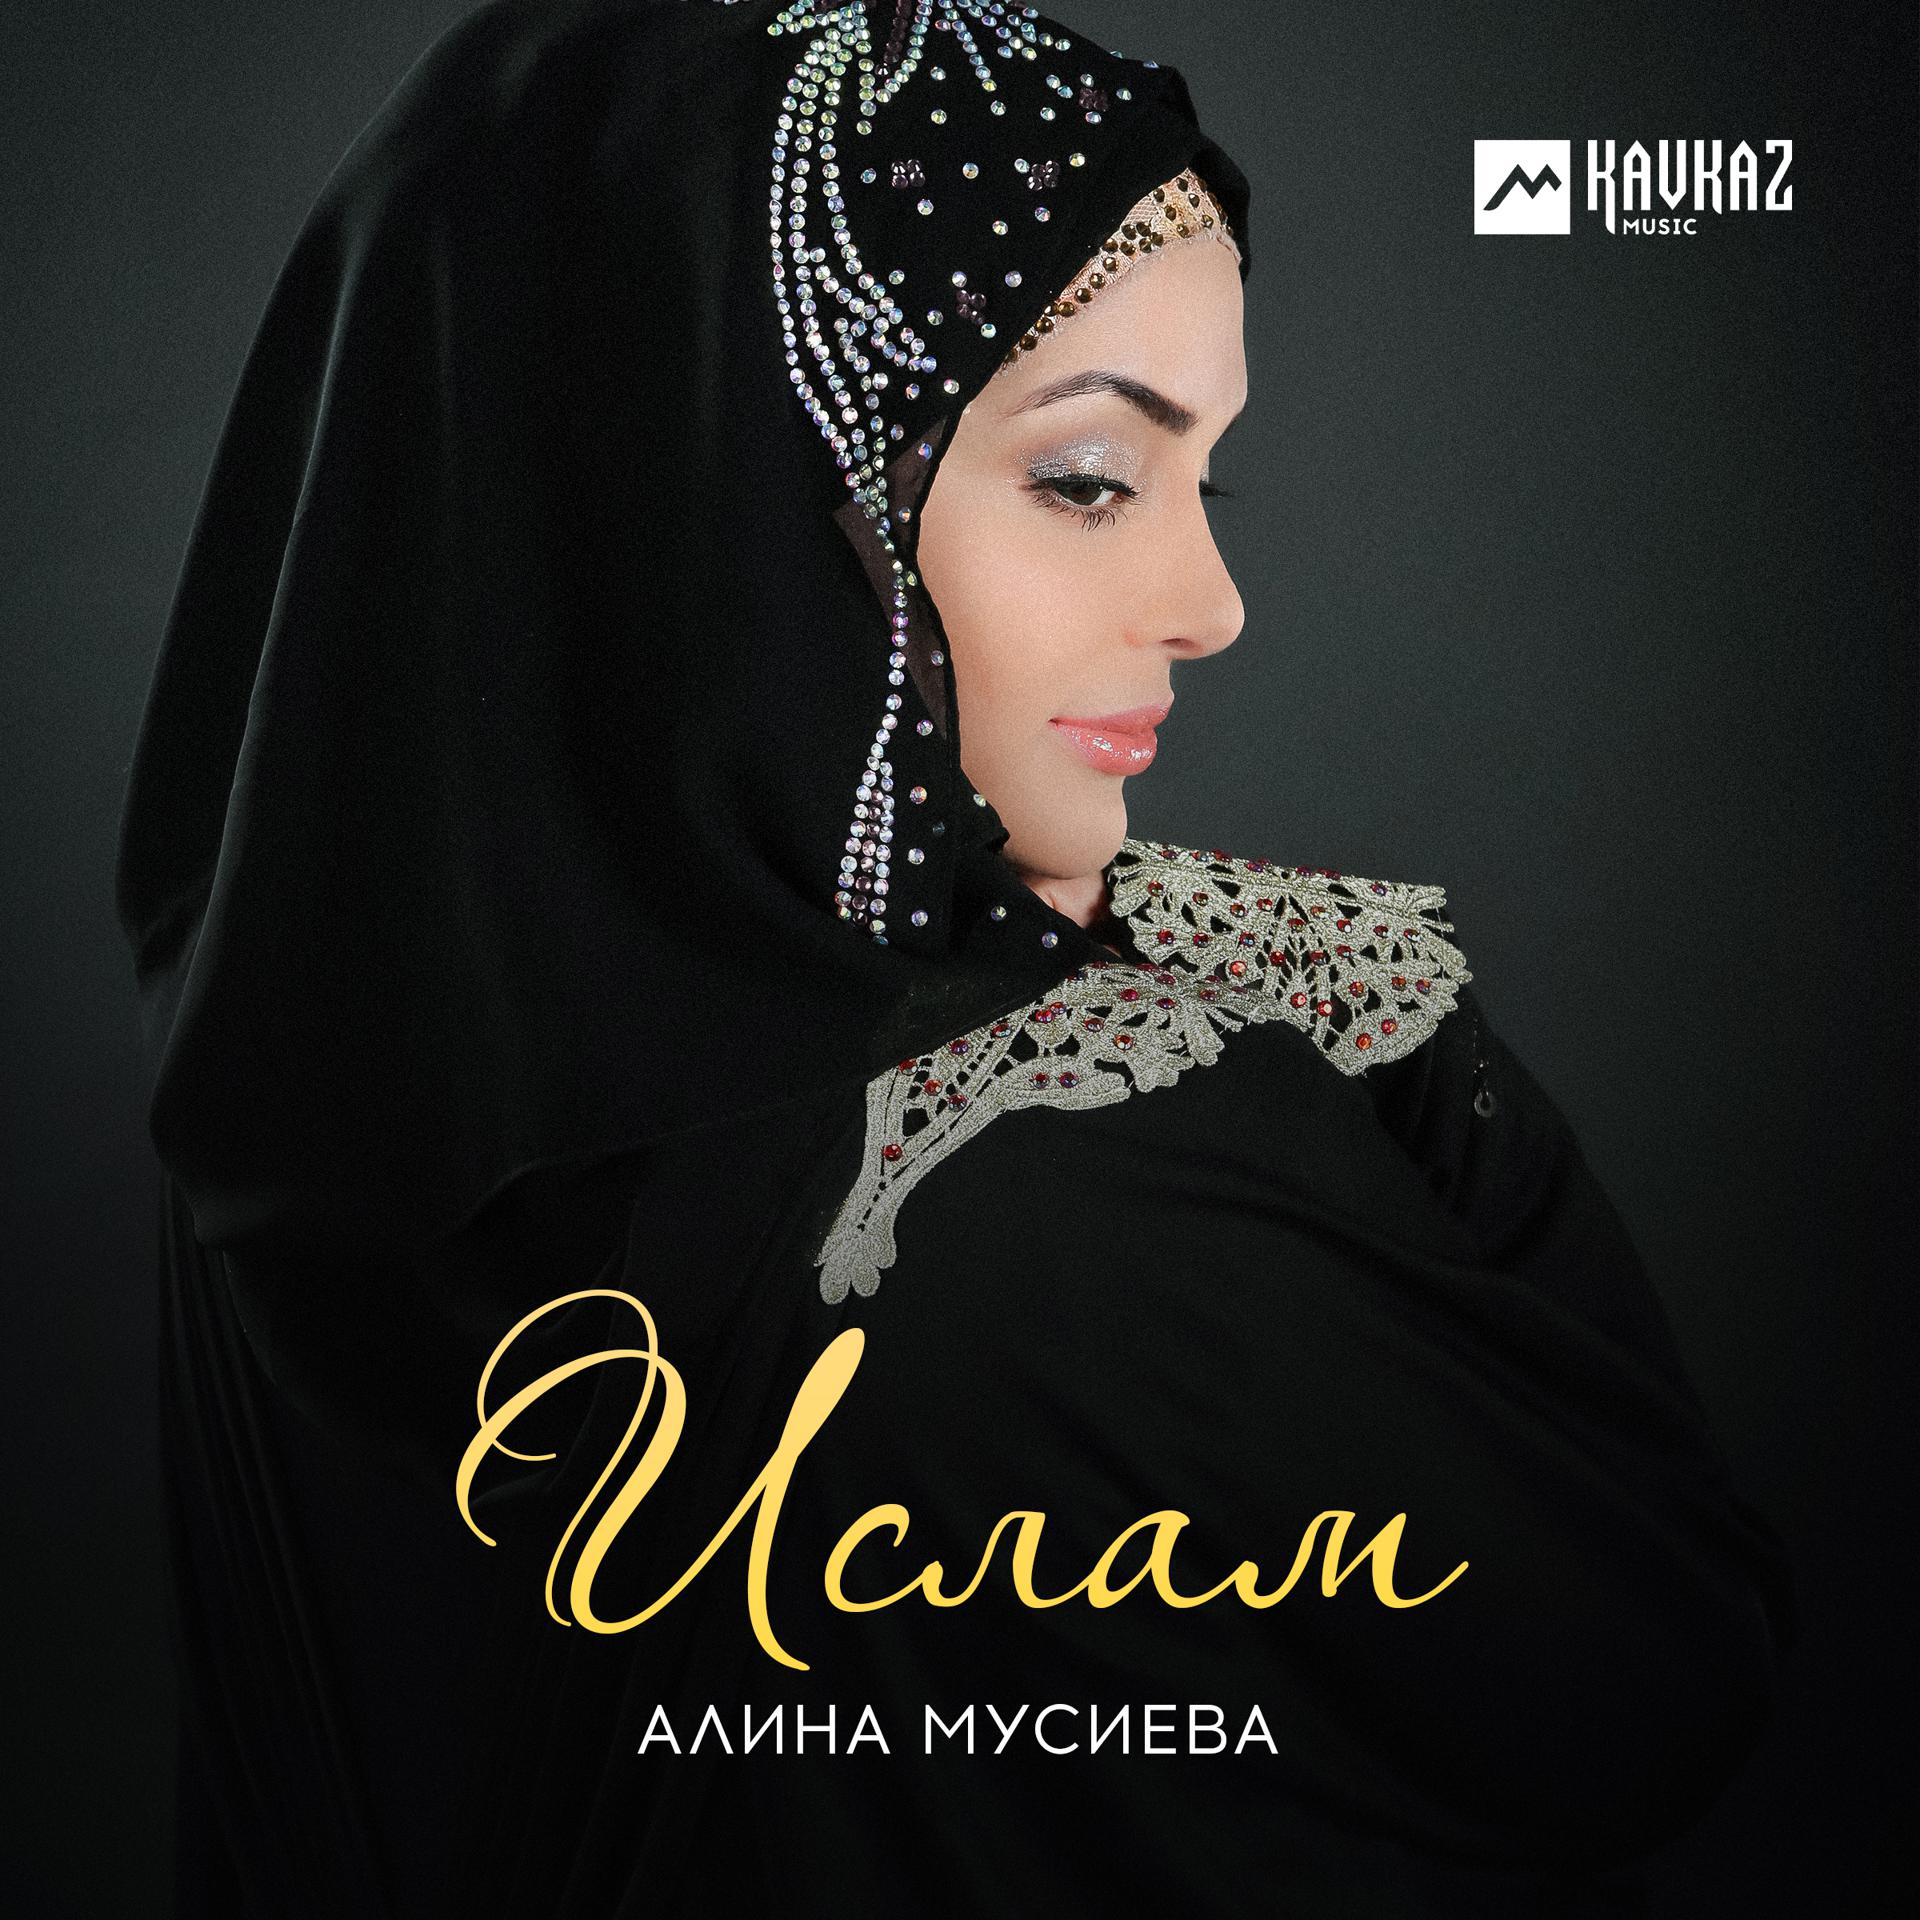 Мусульманская мелодия. Альбом Ислама.